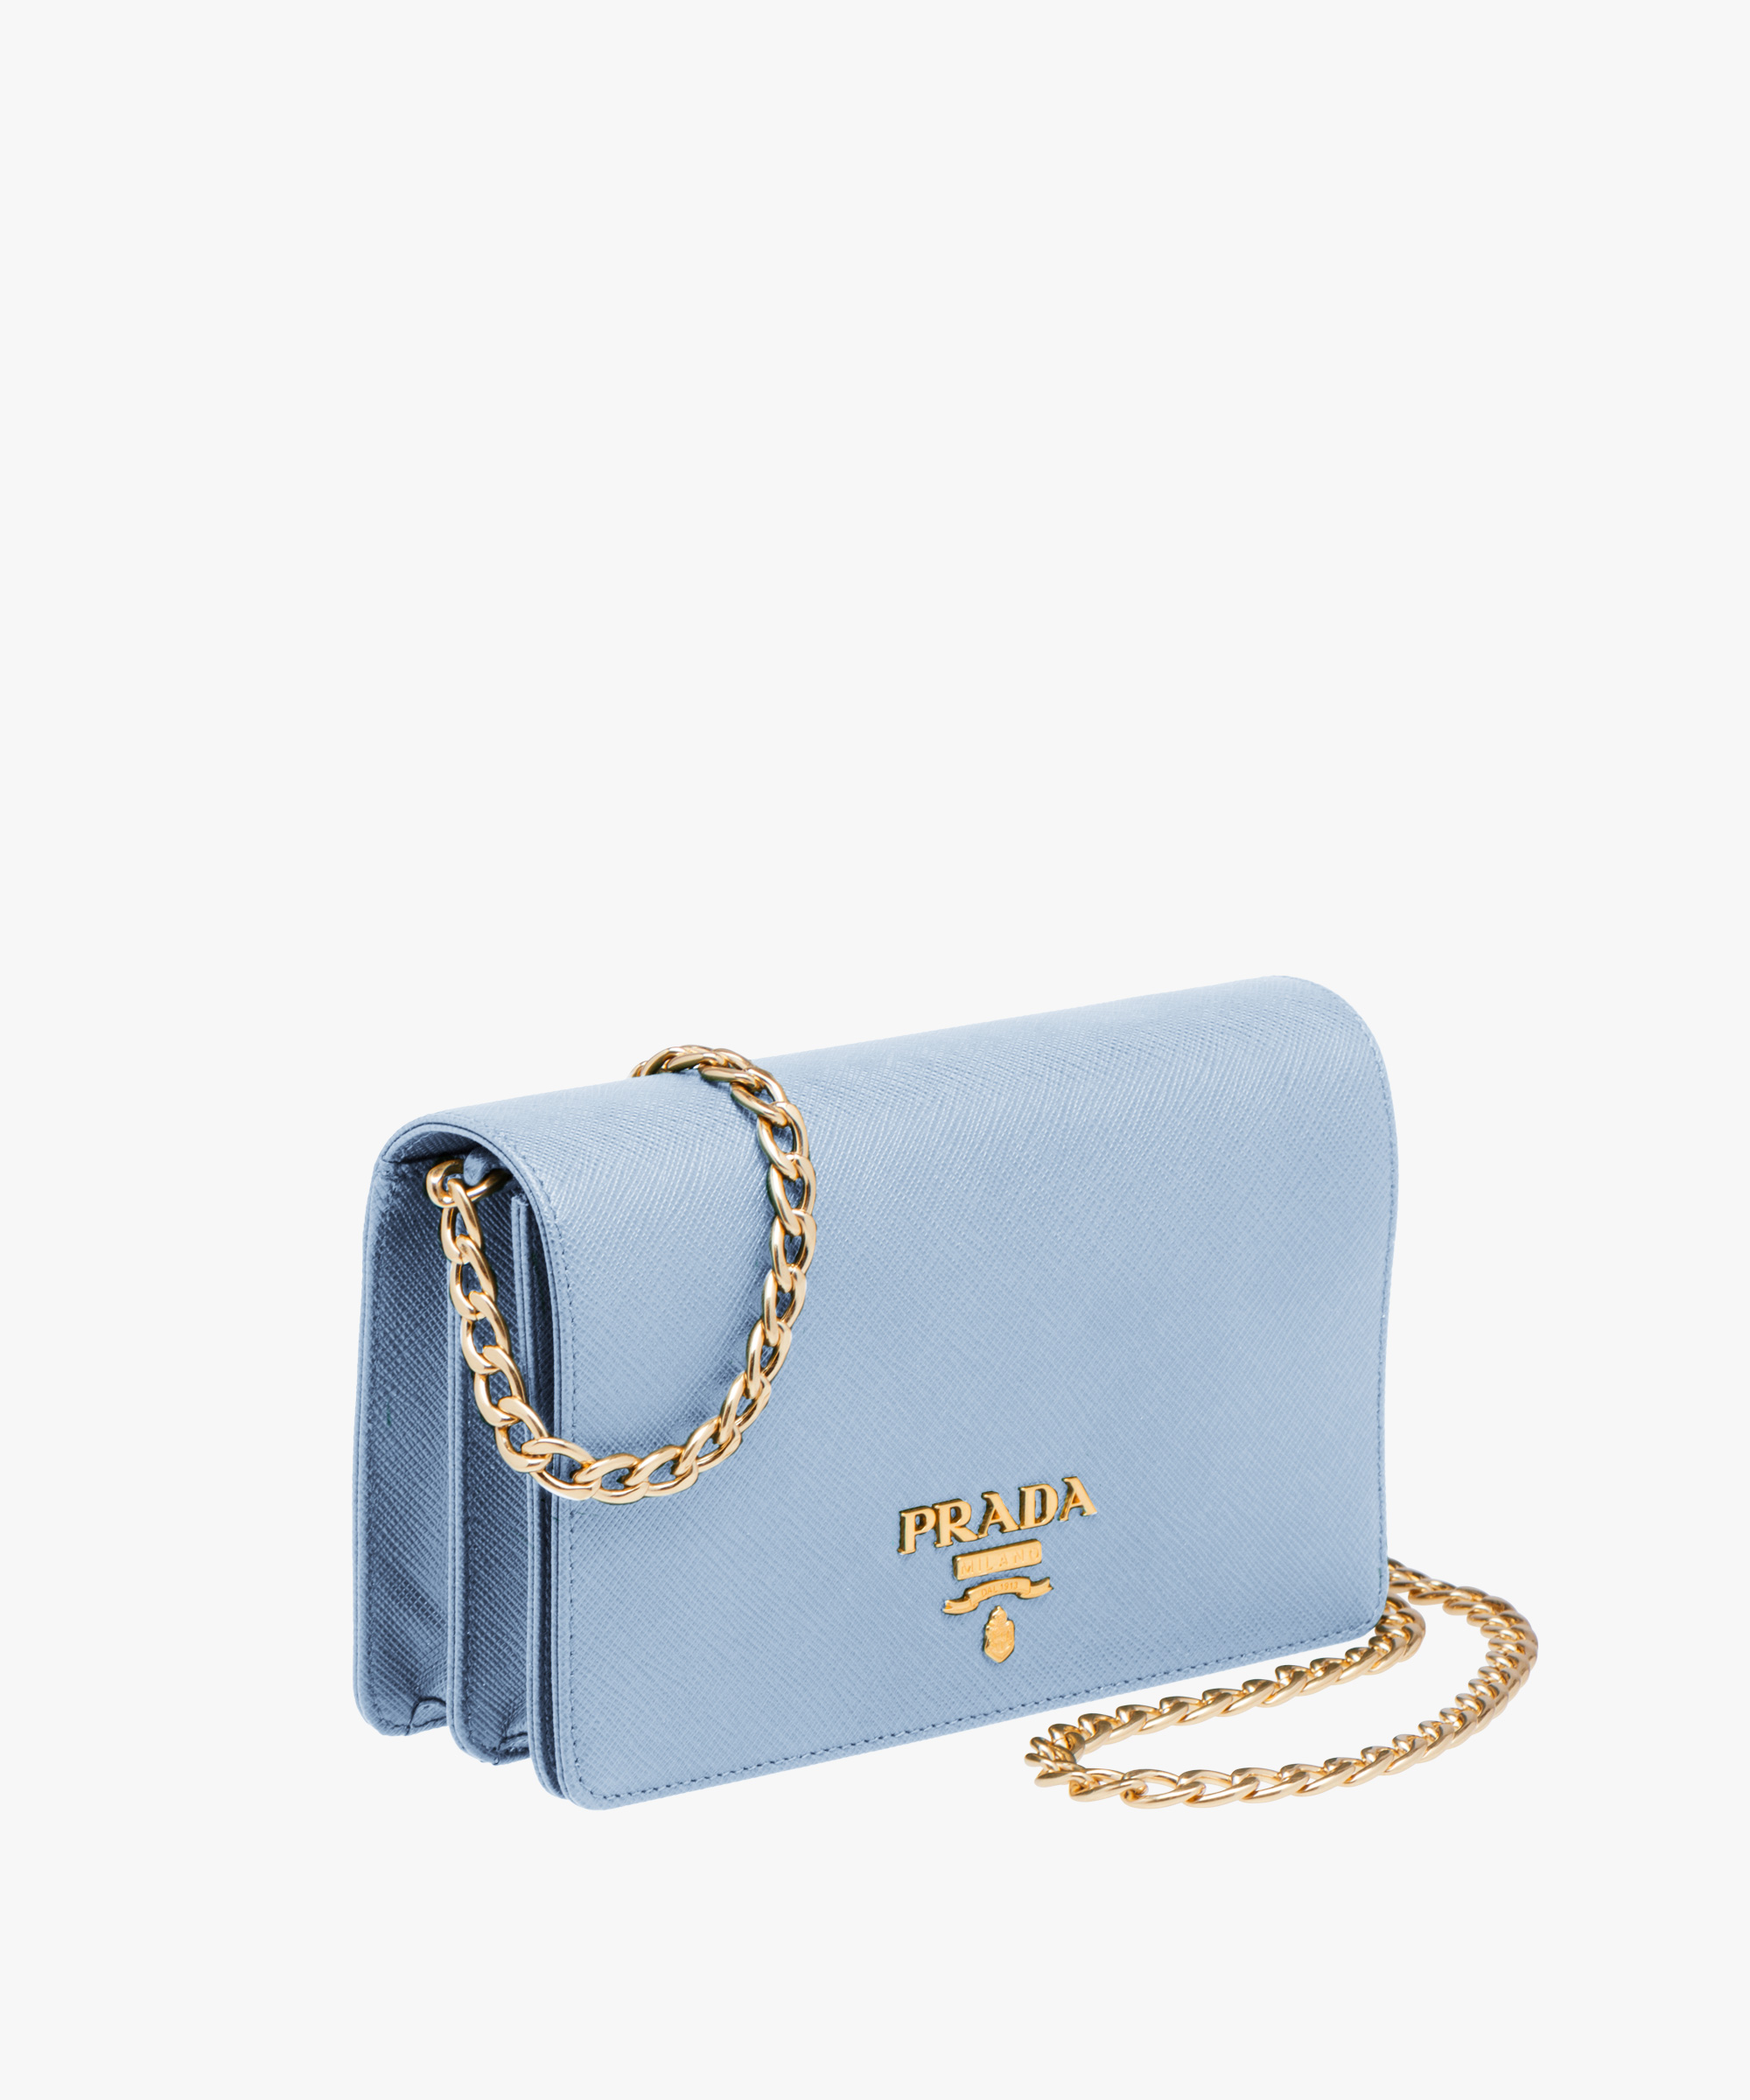 prada blue purse